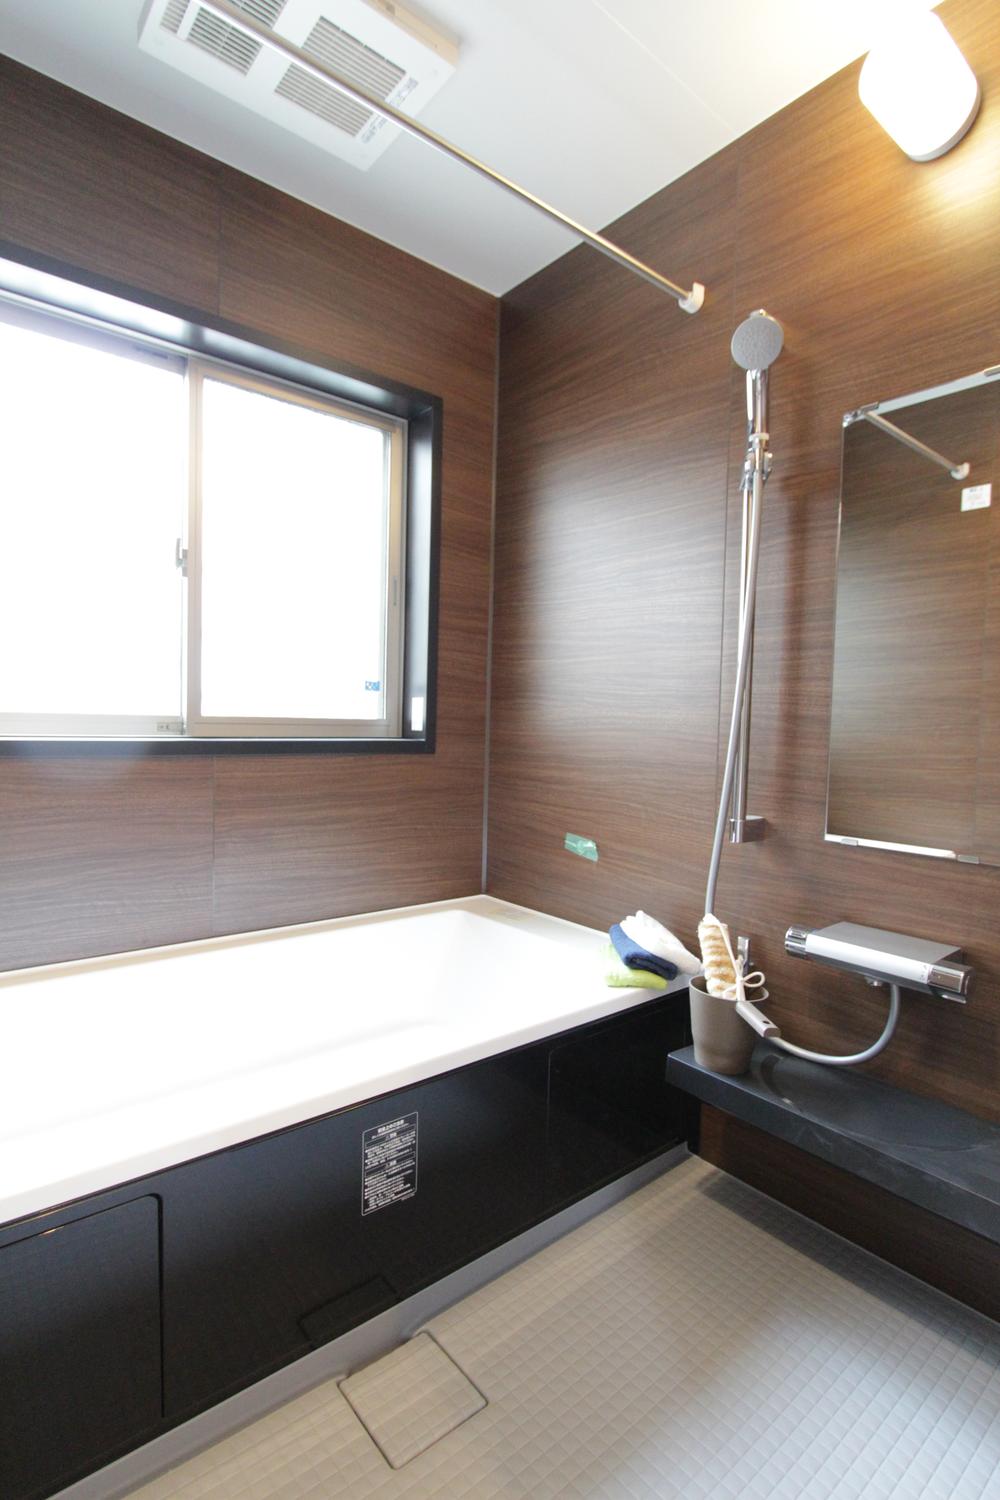 Bathroom. Stylish bathroom woodgrain